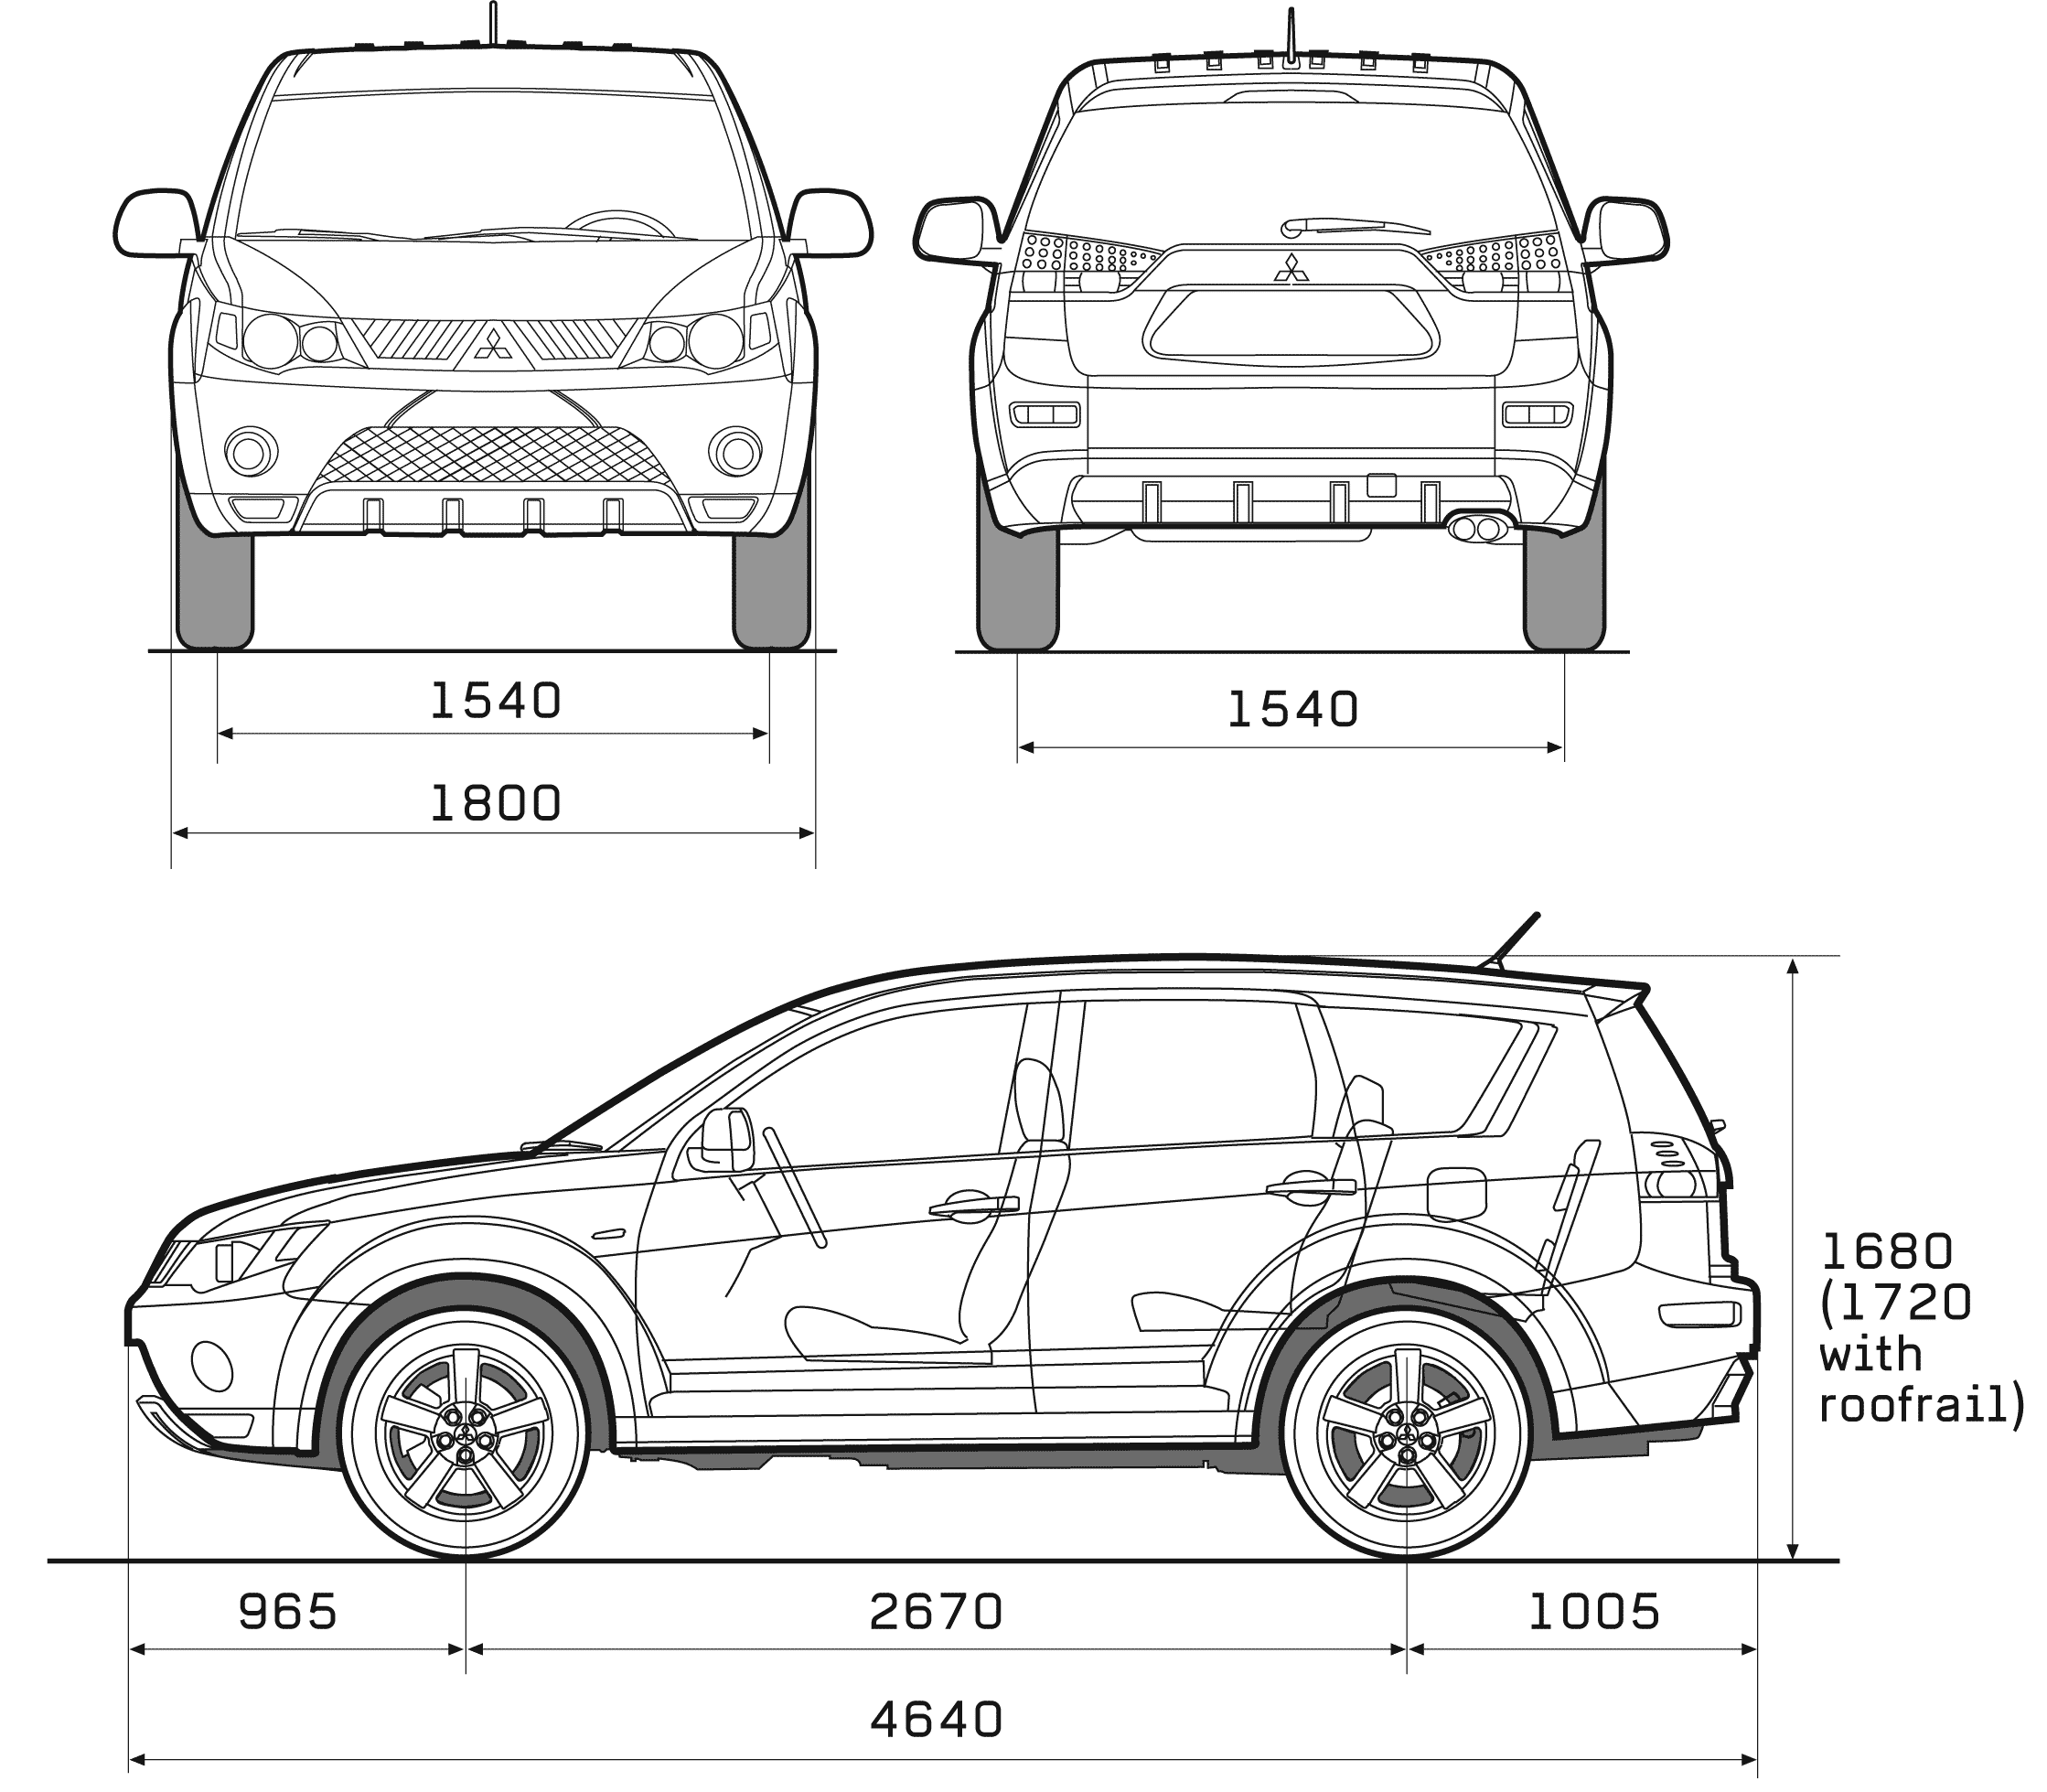 Mitsubishi outlander 2 - обзор, технические характеристики